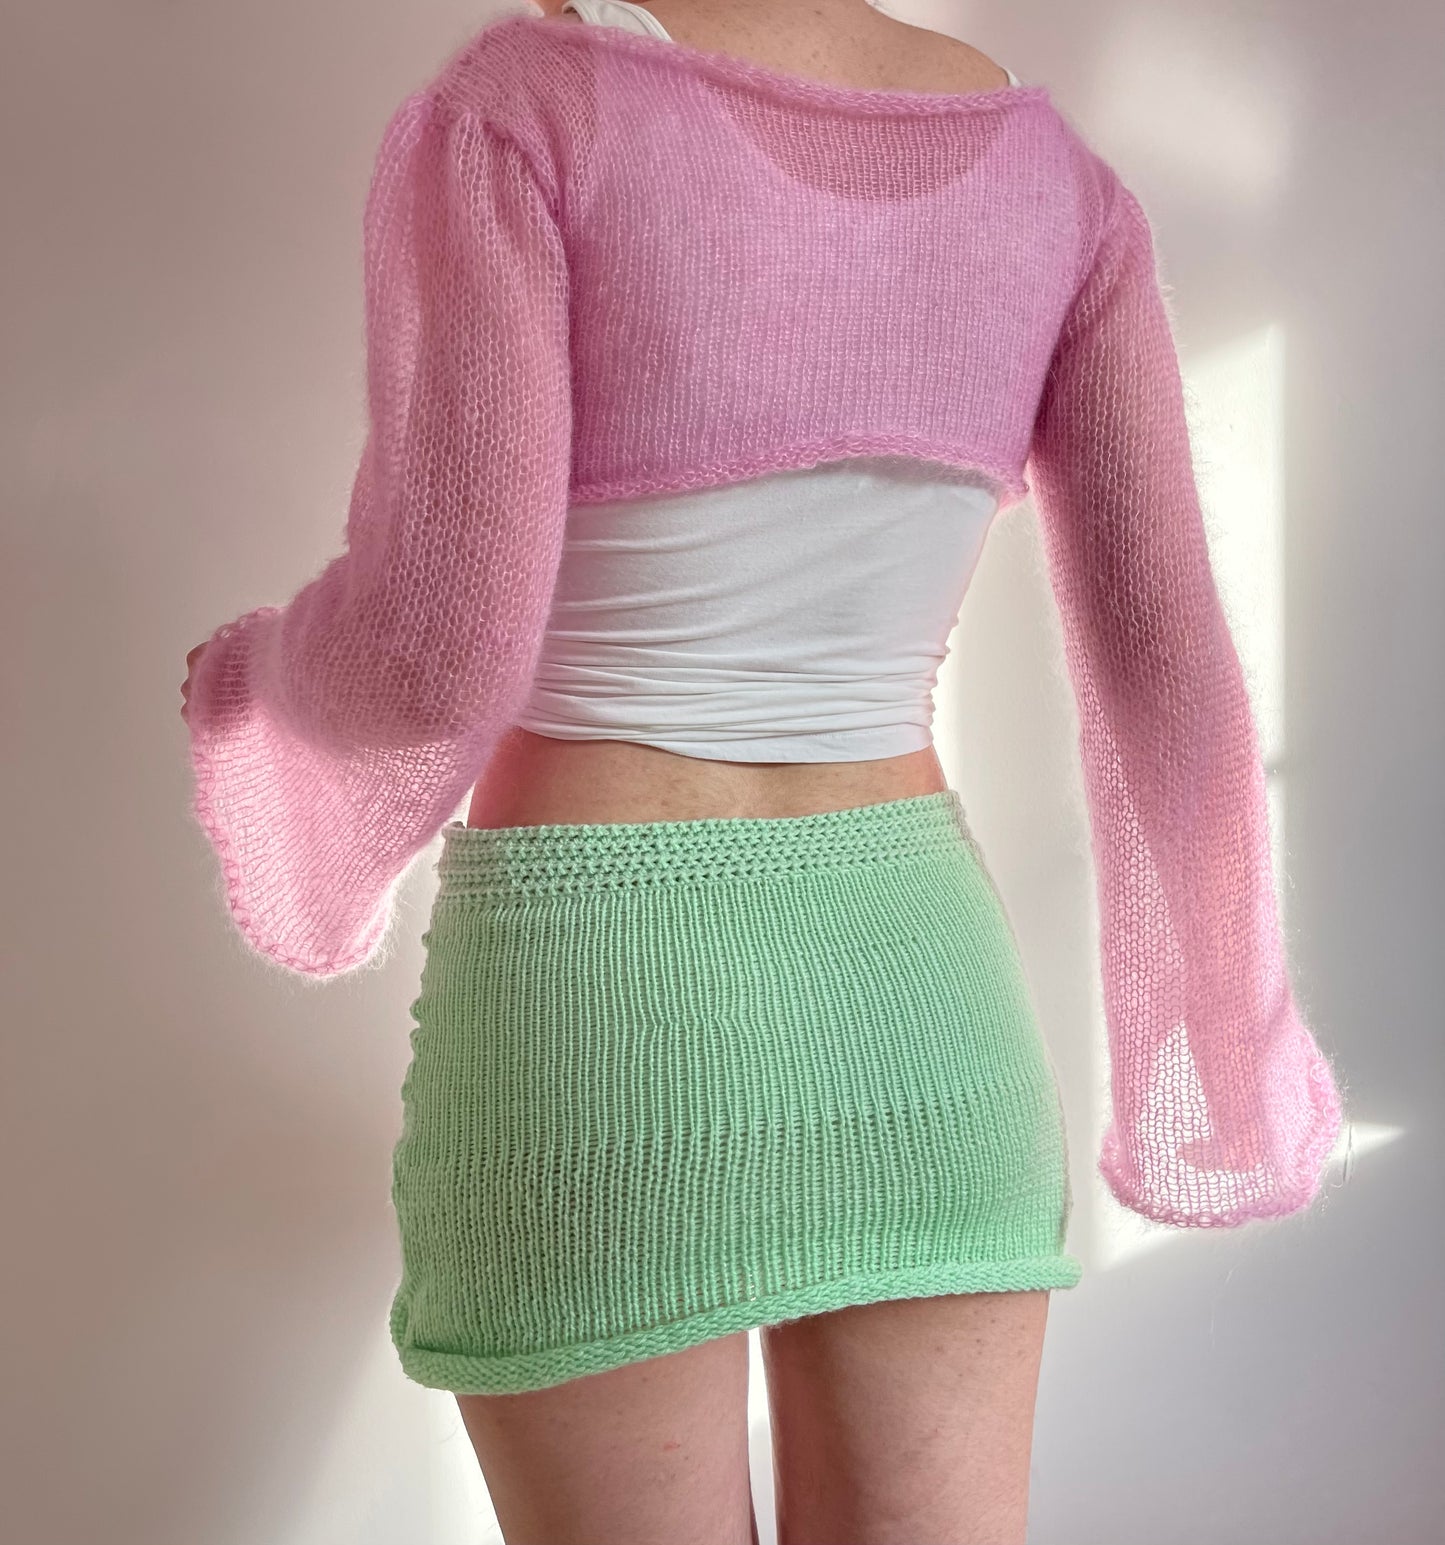 Handmade knitted mini skirt in mint green